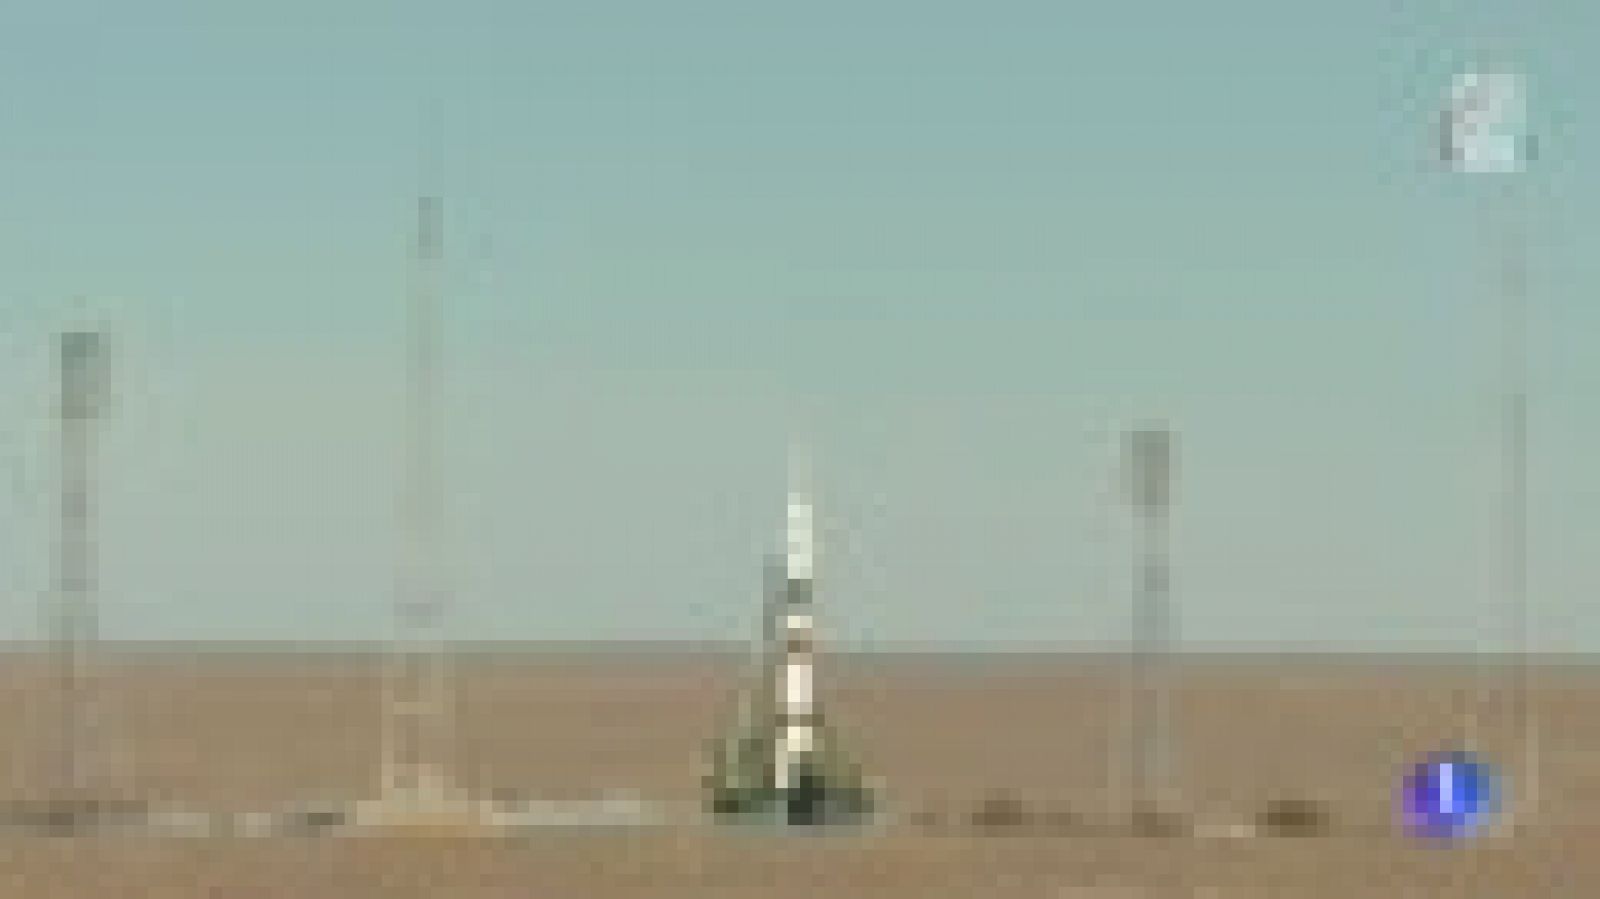 Un sensor deformado durante el ensamblaje causó el fallido lanzamiento de la Soyuz